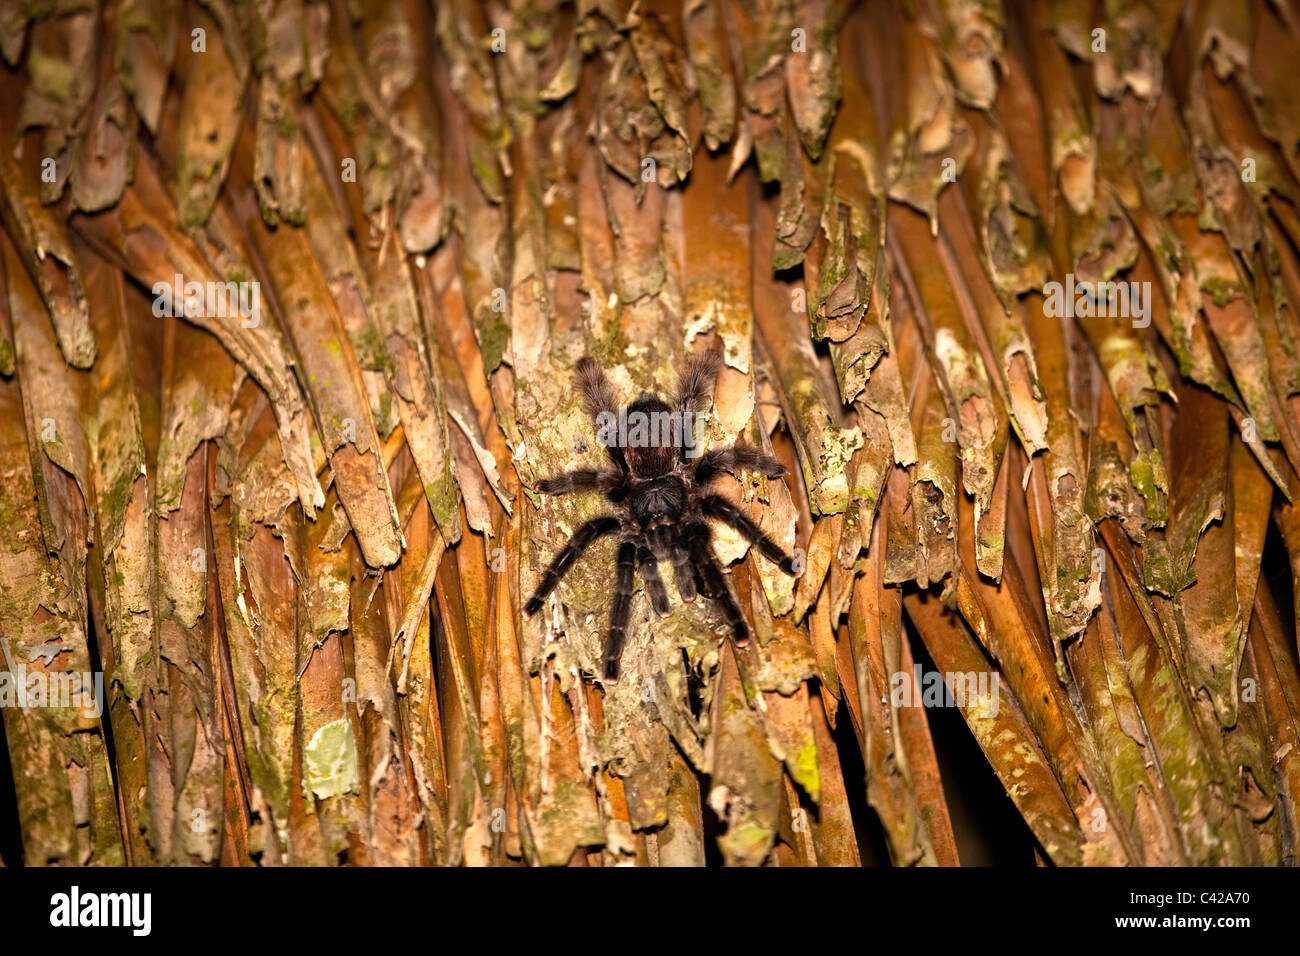 Peru, Cruz de Mayo, Manu National Park, UNESCO World Heritage Site, Pantiacolla mountains. Tarantula spider. Stock Photo